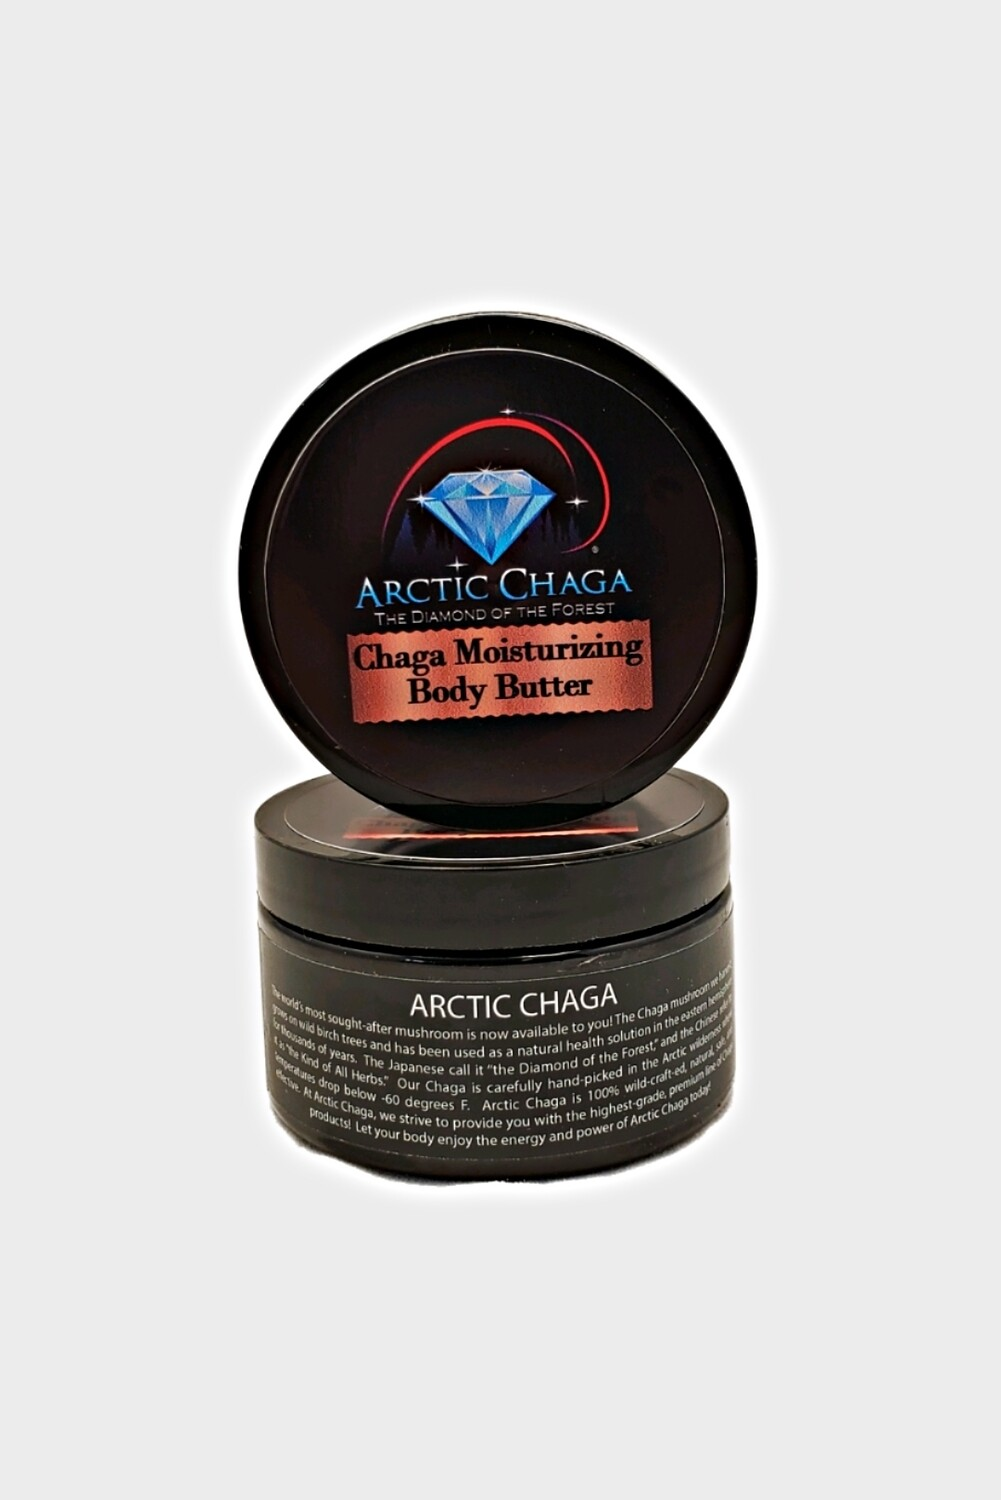 Chaga body butter from Arctic Chaga